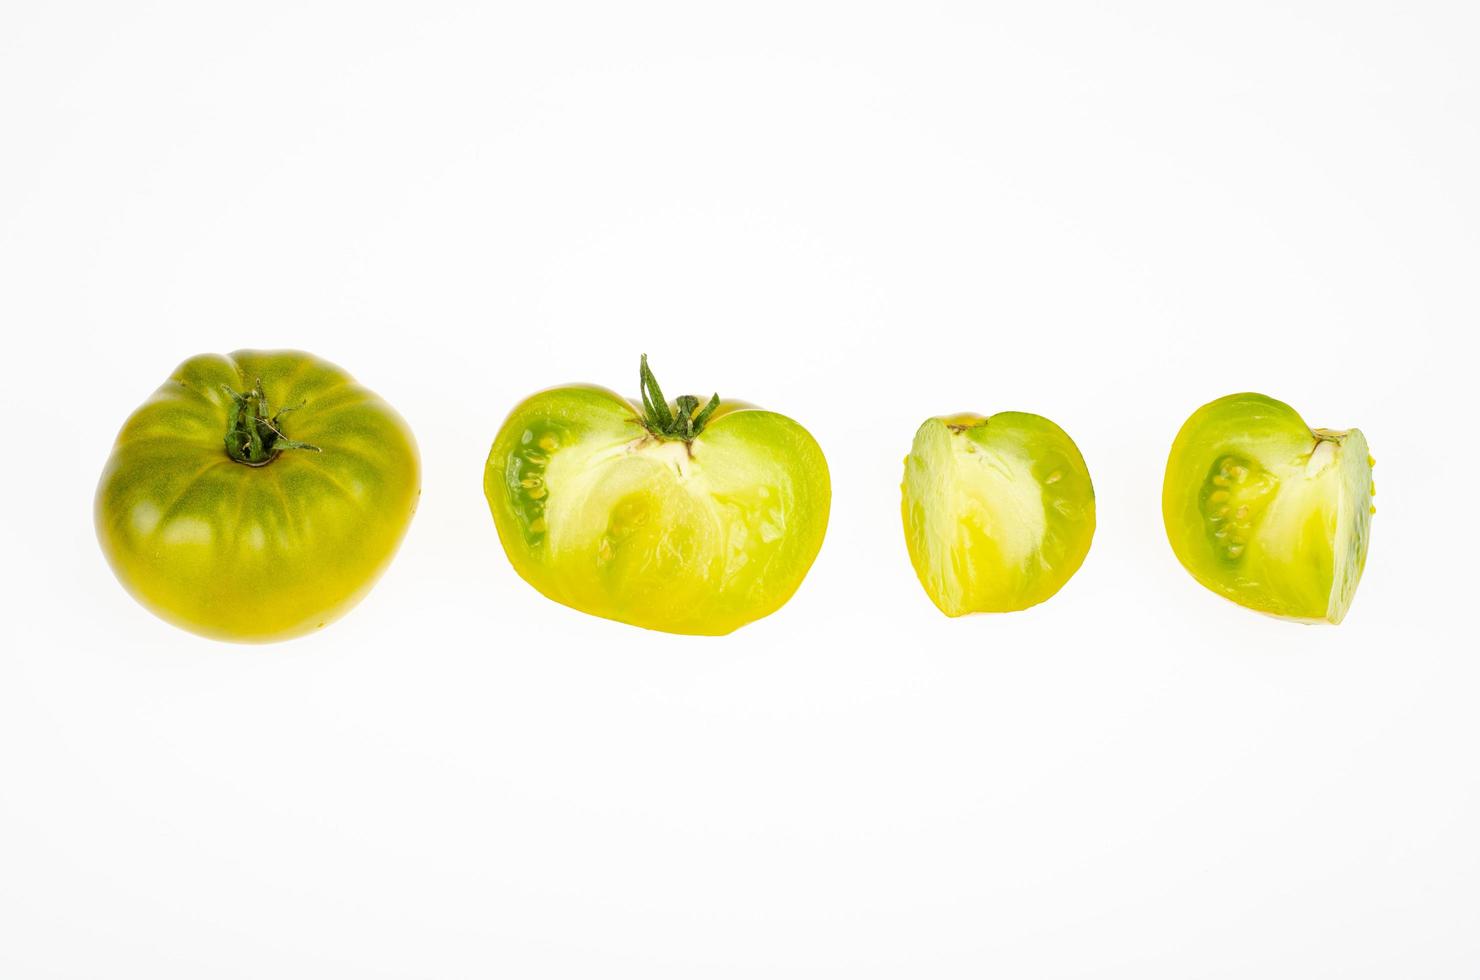 frutas enteras y rodajas de color amarillo verdoso de frutos de tomate maduros, aislado sobre fondo blanco. foto de estudio.